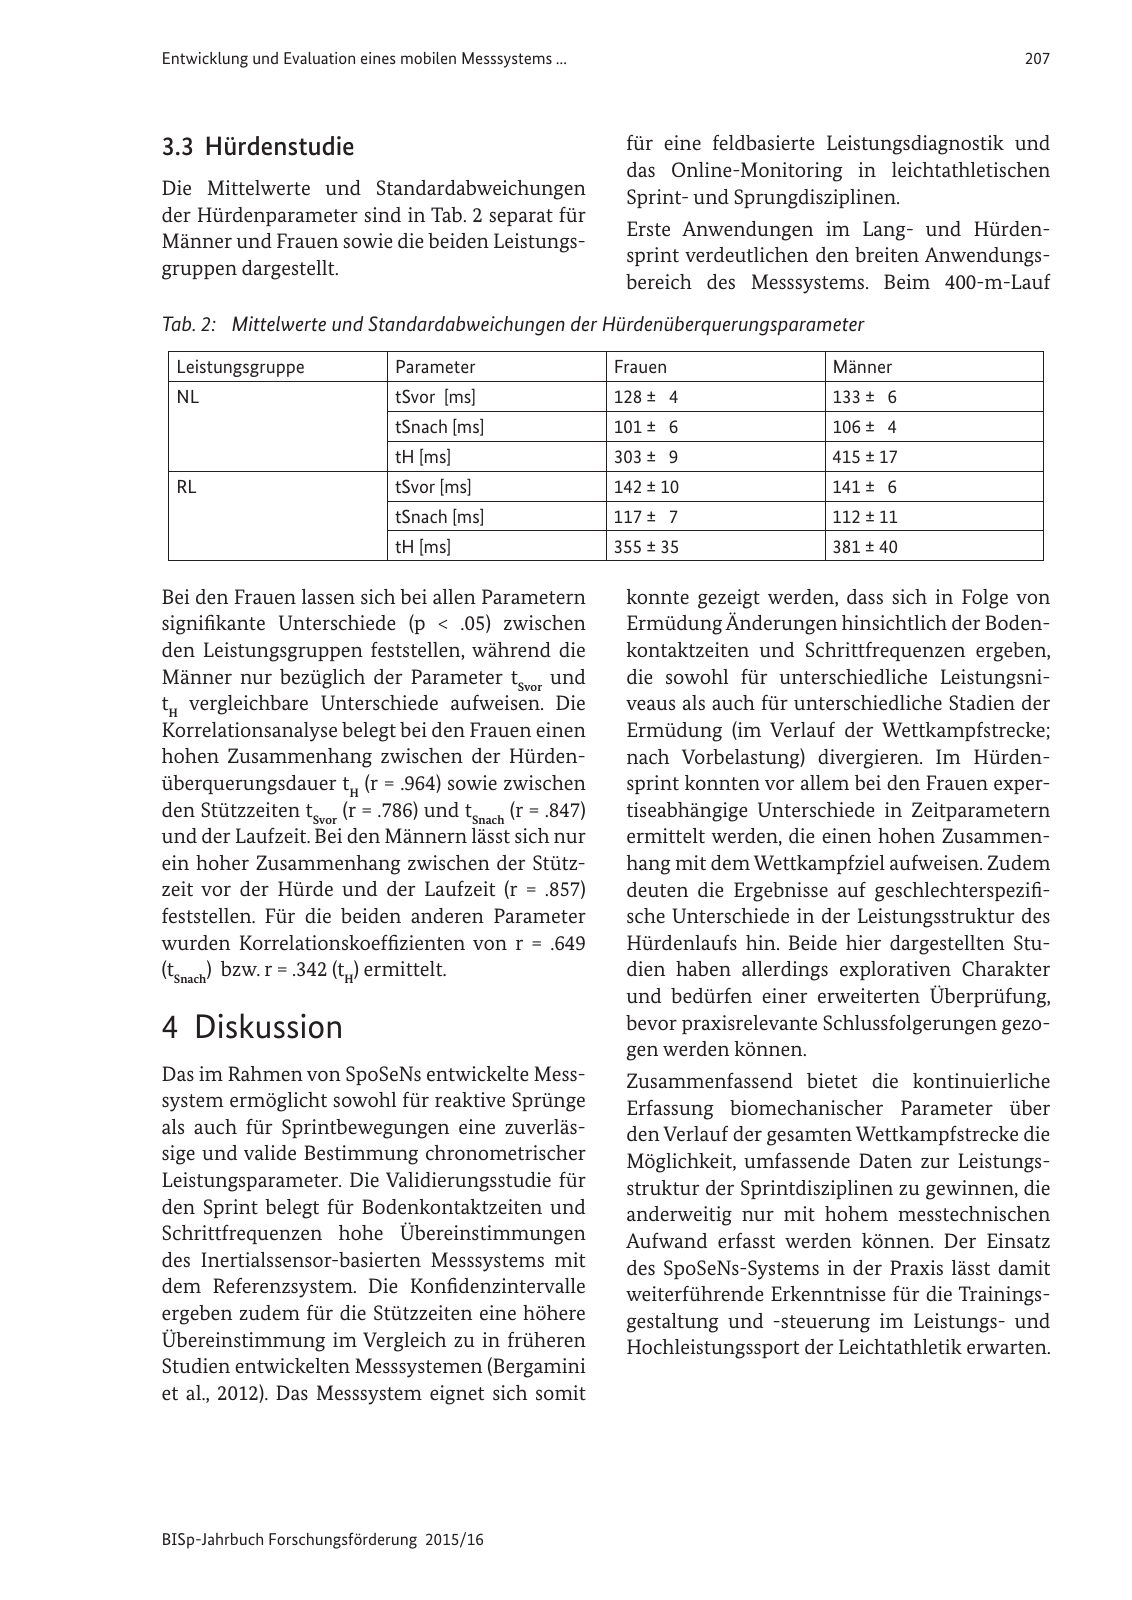 Vorschau BISp-Jahrbuch Forschungsförderung 2015/16 Seite 209